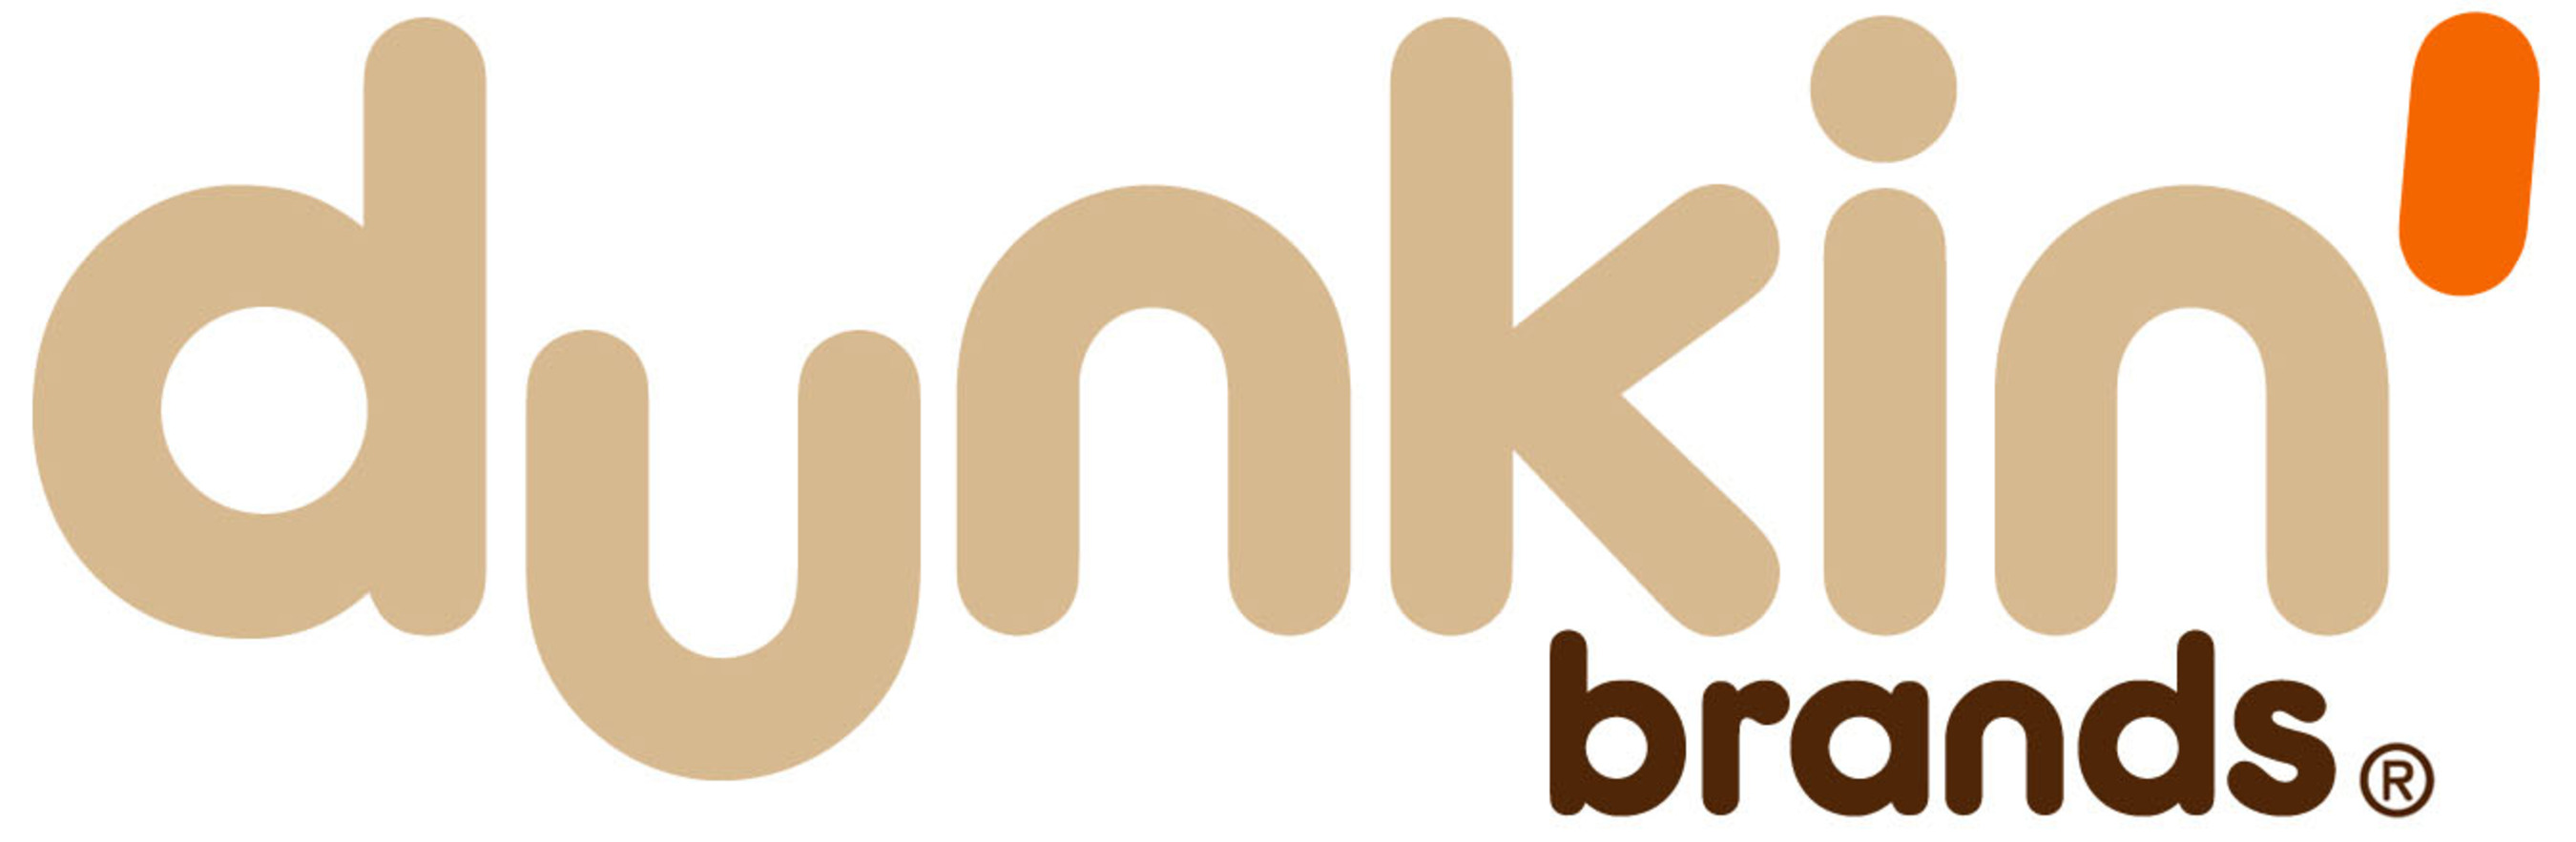 Dunkin' Brands Group, Inc.